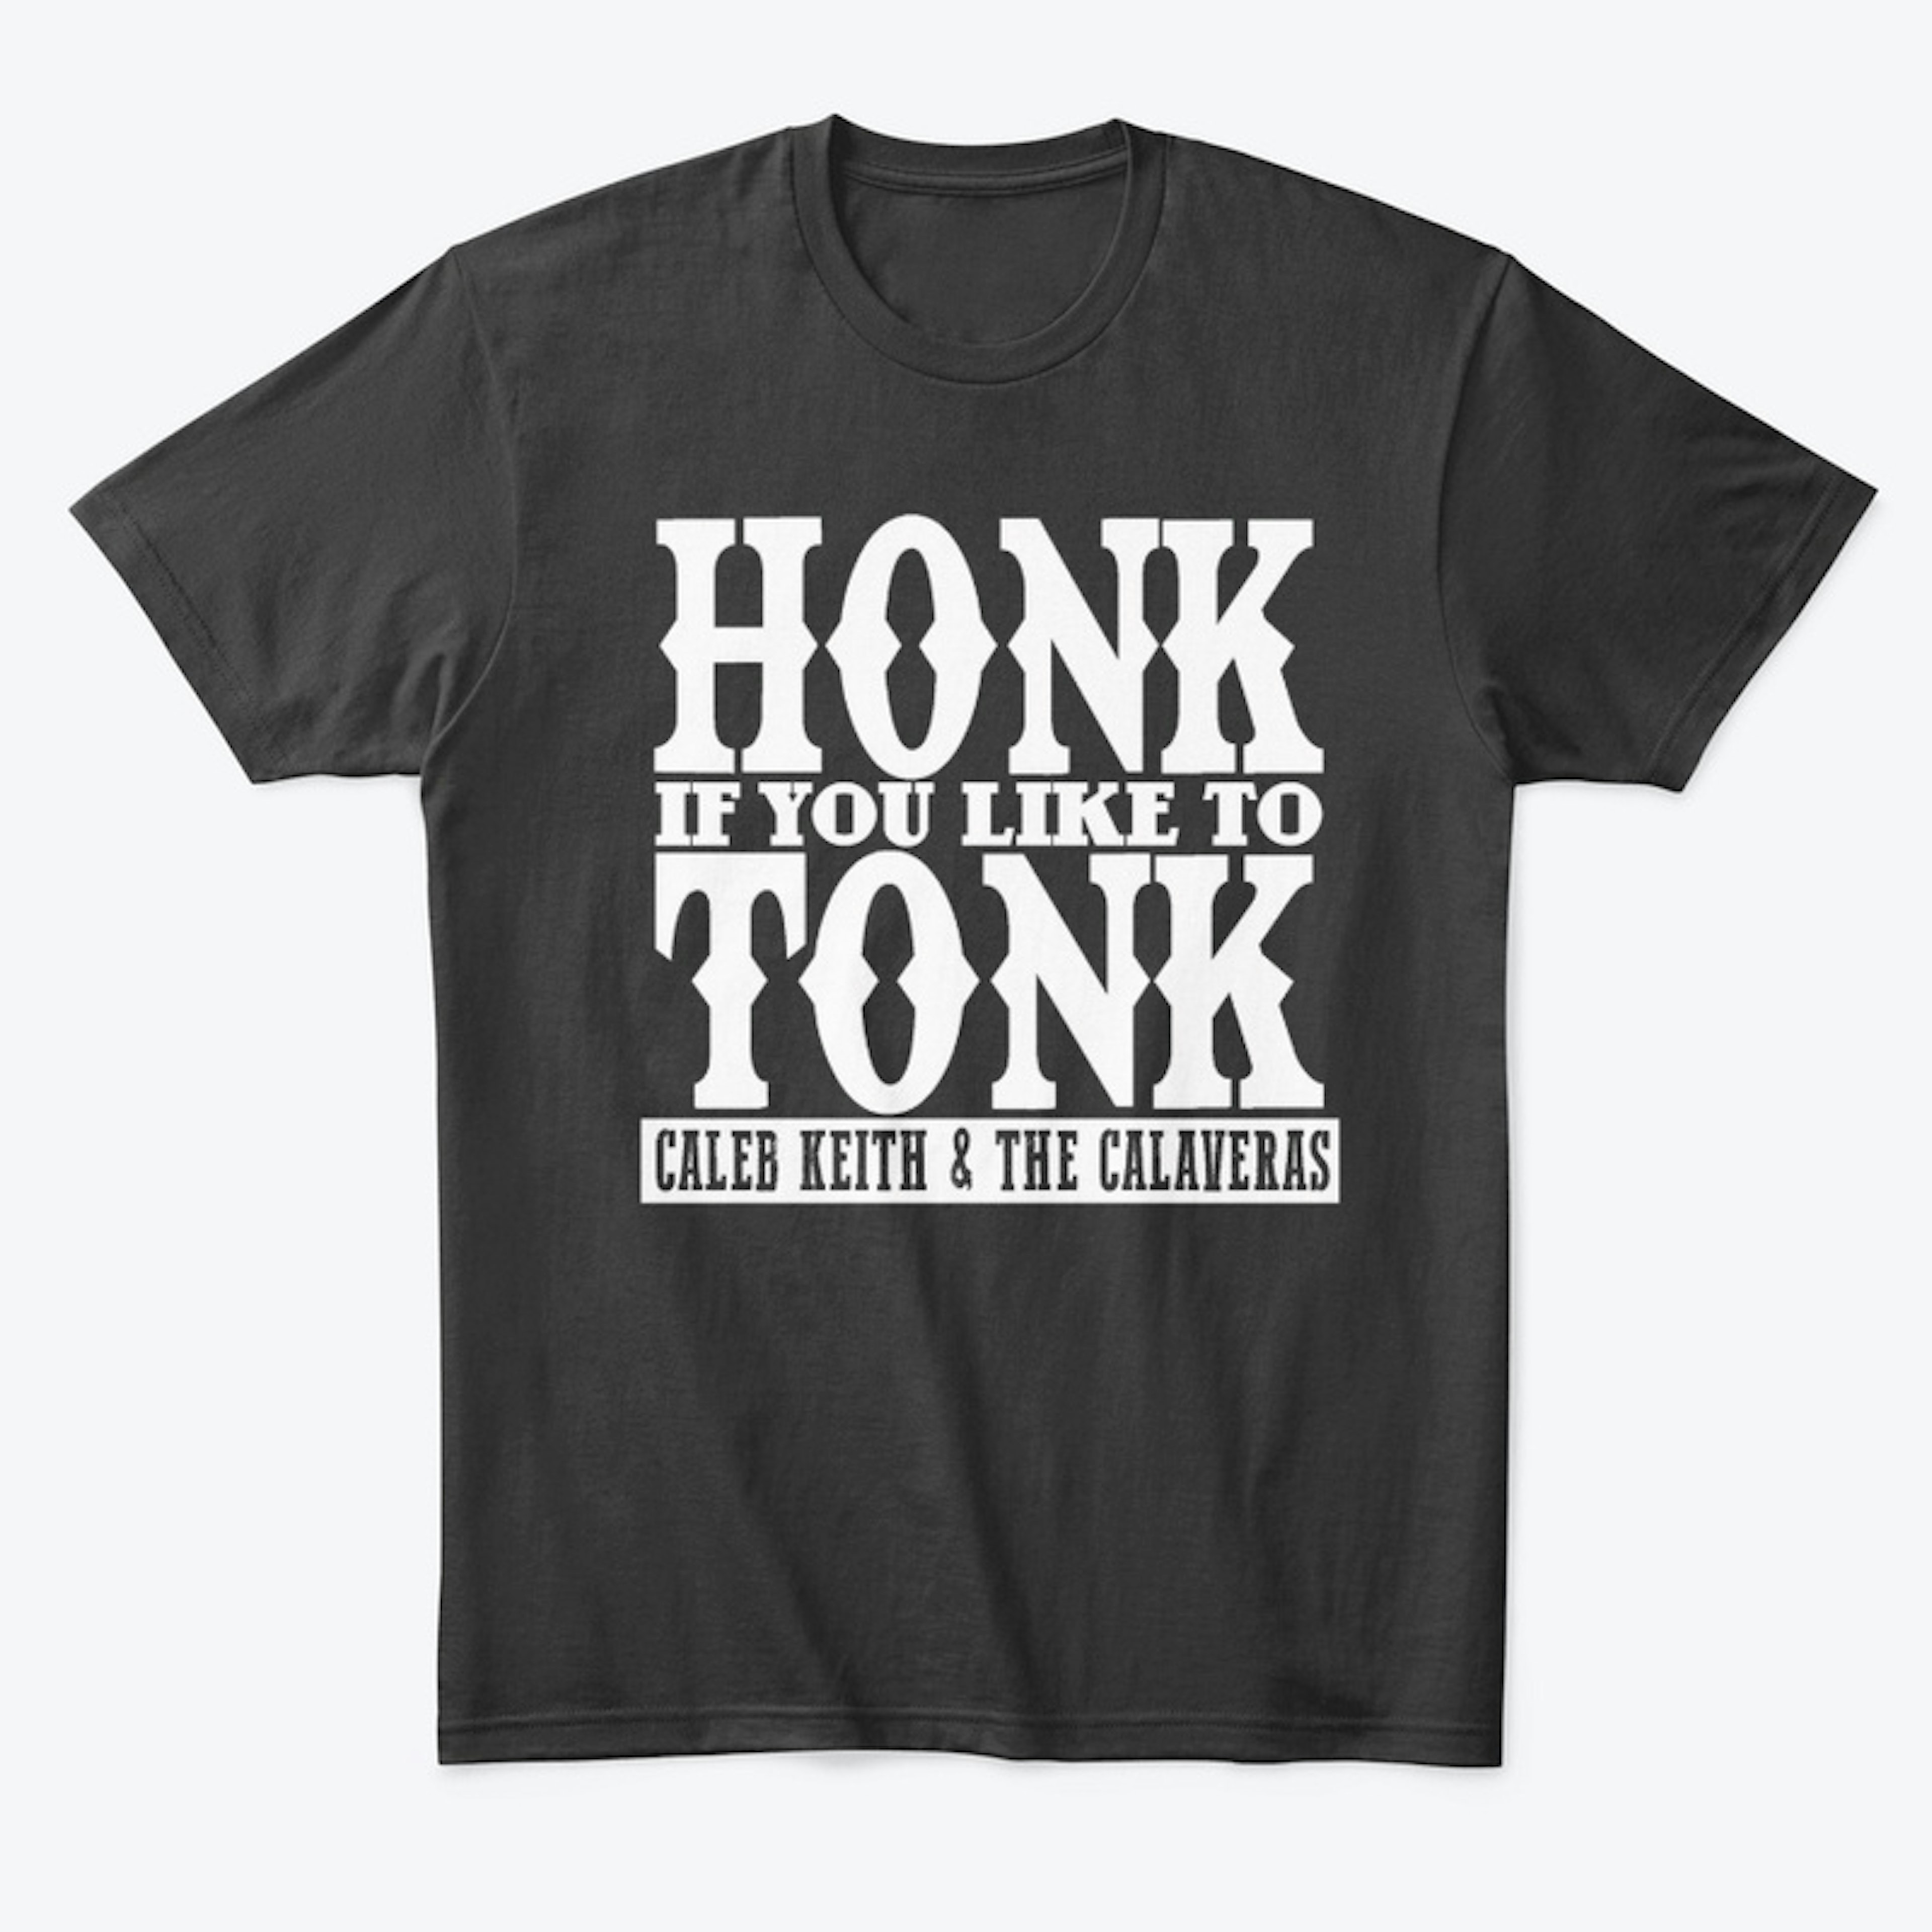 Honk If You Like to Tonk